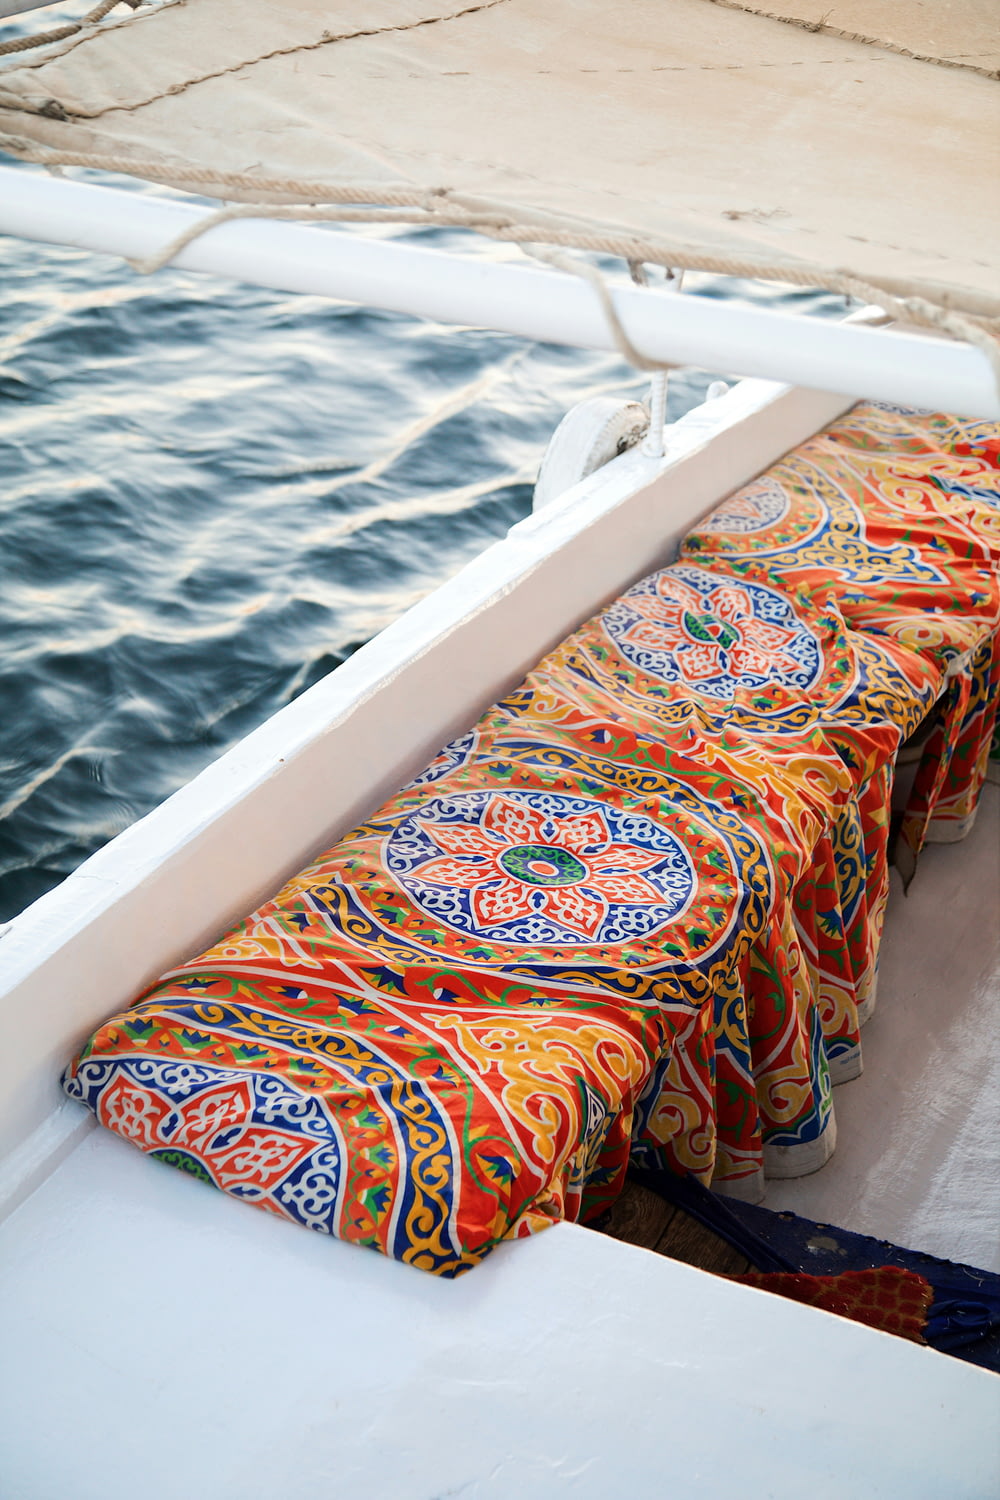 un banc coloré sur un bateau dans l’eau